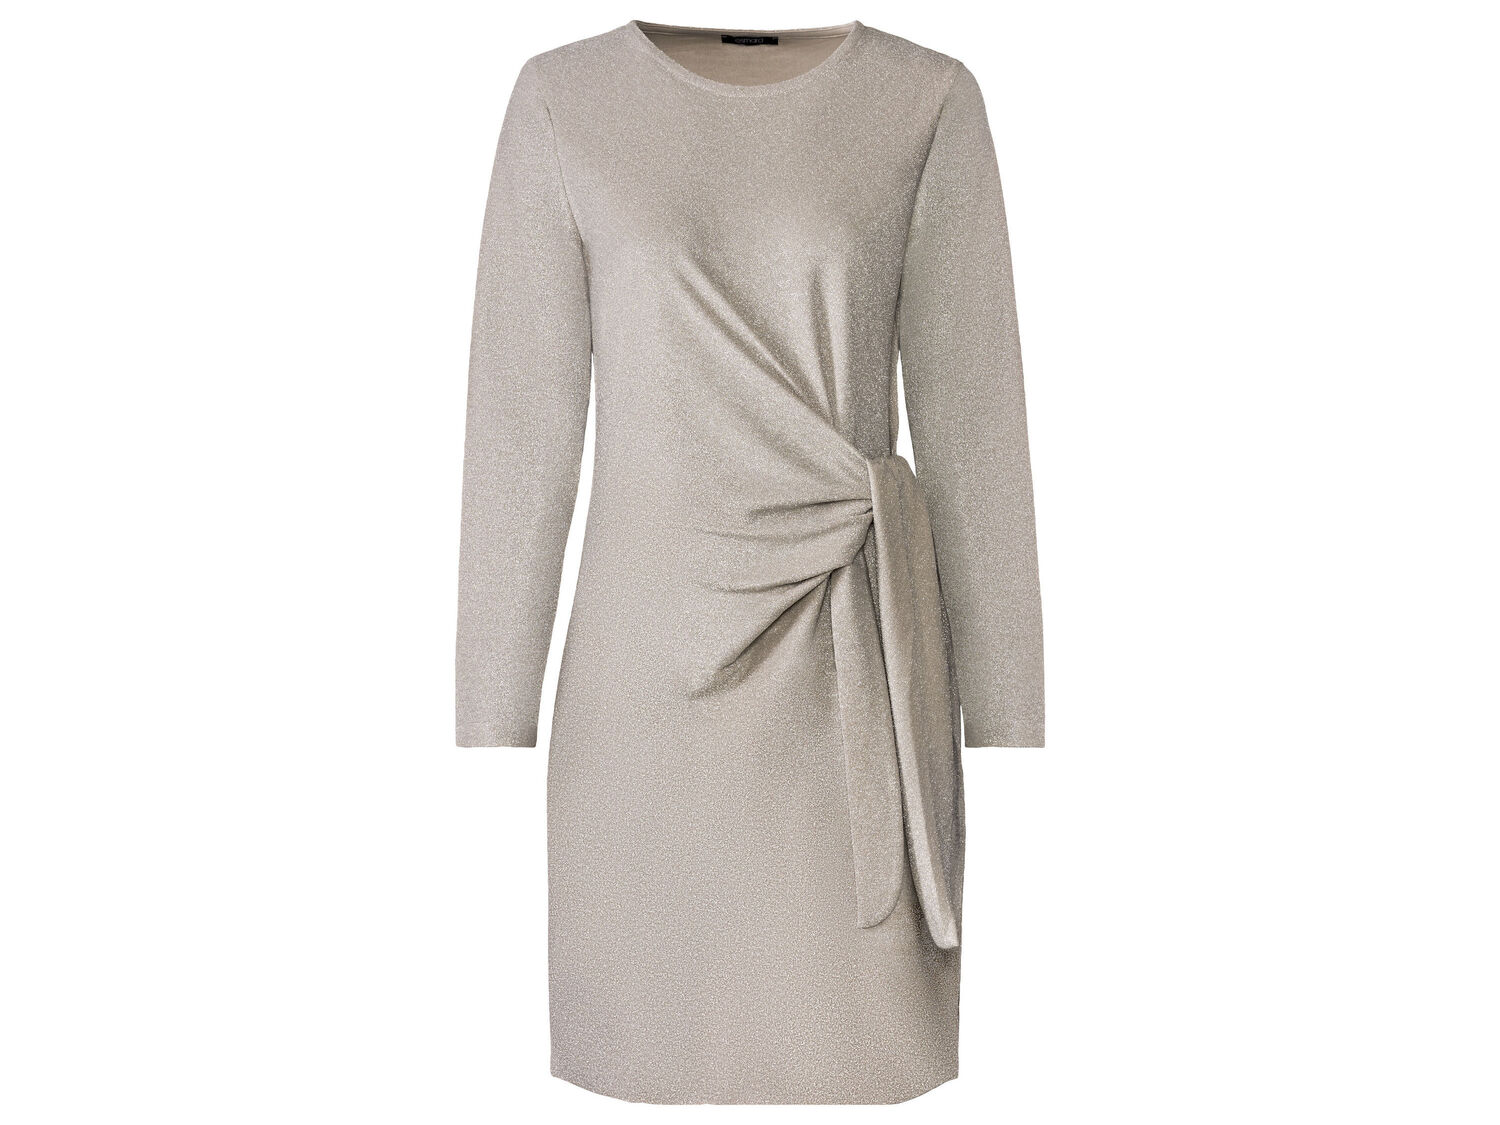 Vestito corto da donna Esmara, prezzo 11.99 &#8364; 
Misure: S-L
Taglie disponibili

Caratteristiche

- ...